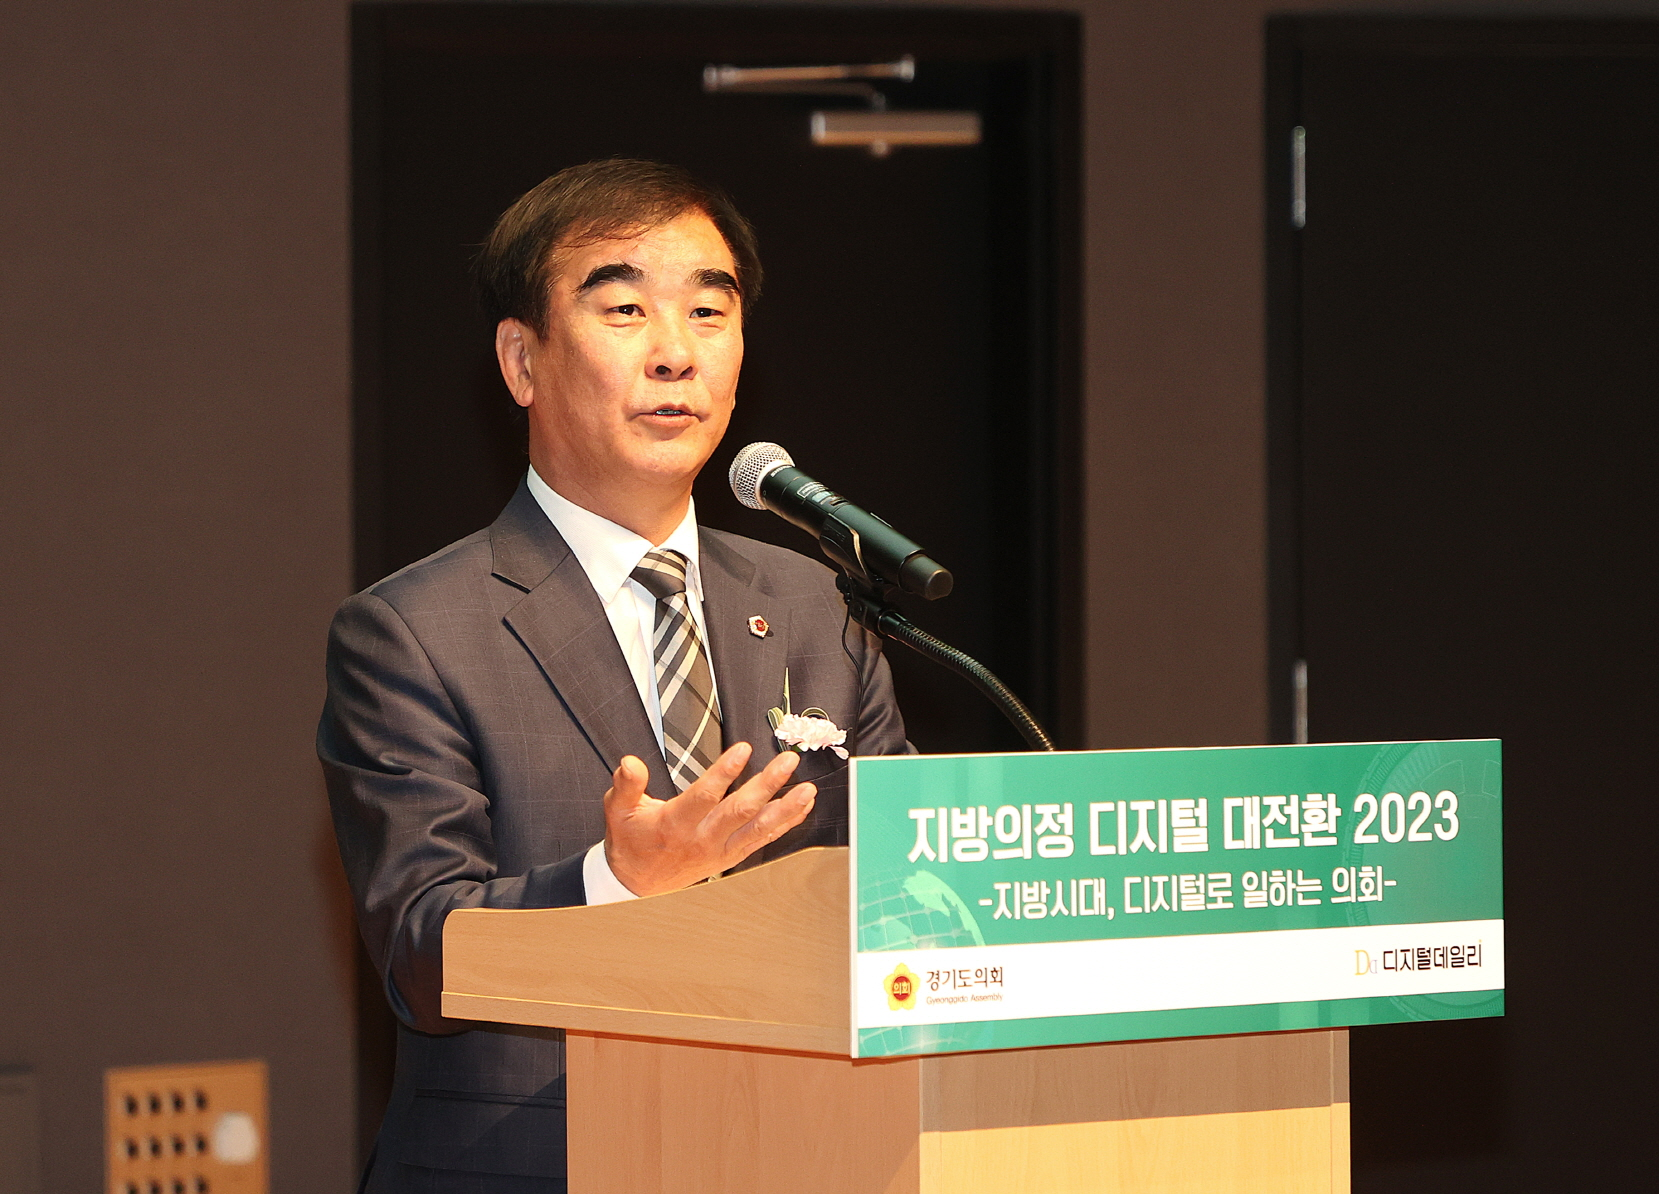 염종현 경기도의회 의장이 8일 지방의정 디지털 대전환 콘퍼런스에 참여해 축사를 하고 있다. 경기도의회 제공